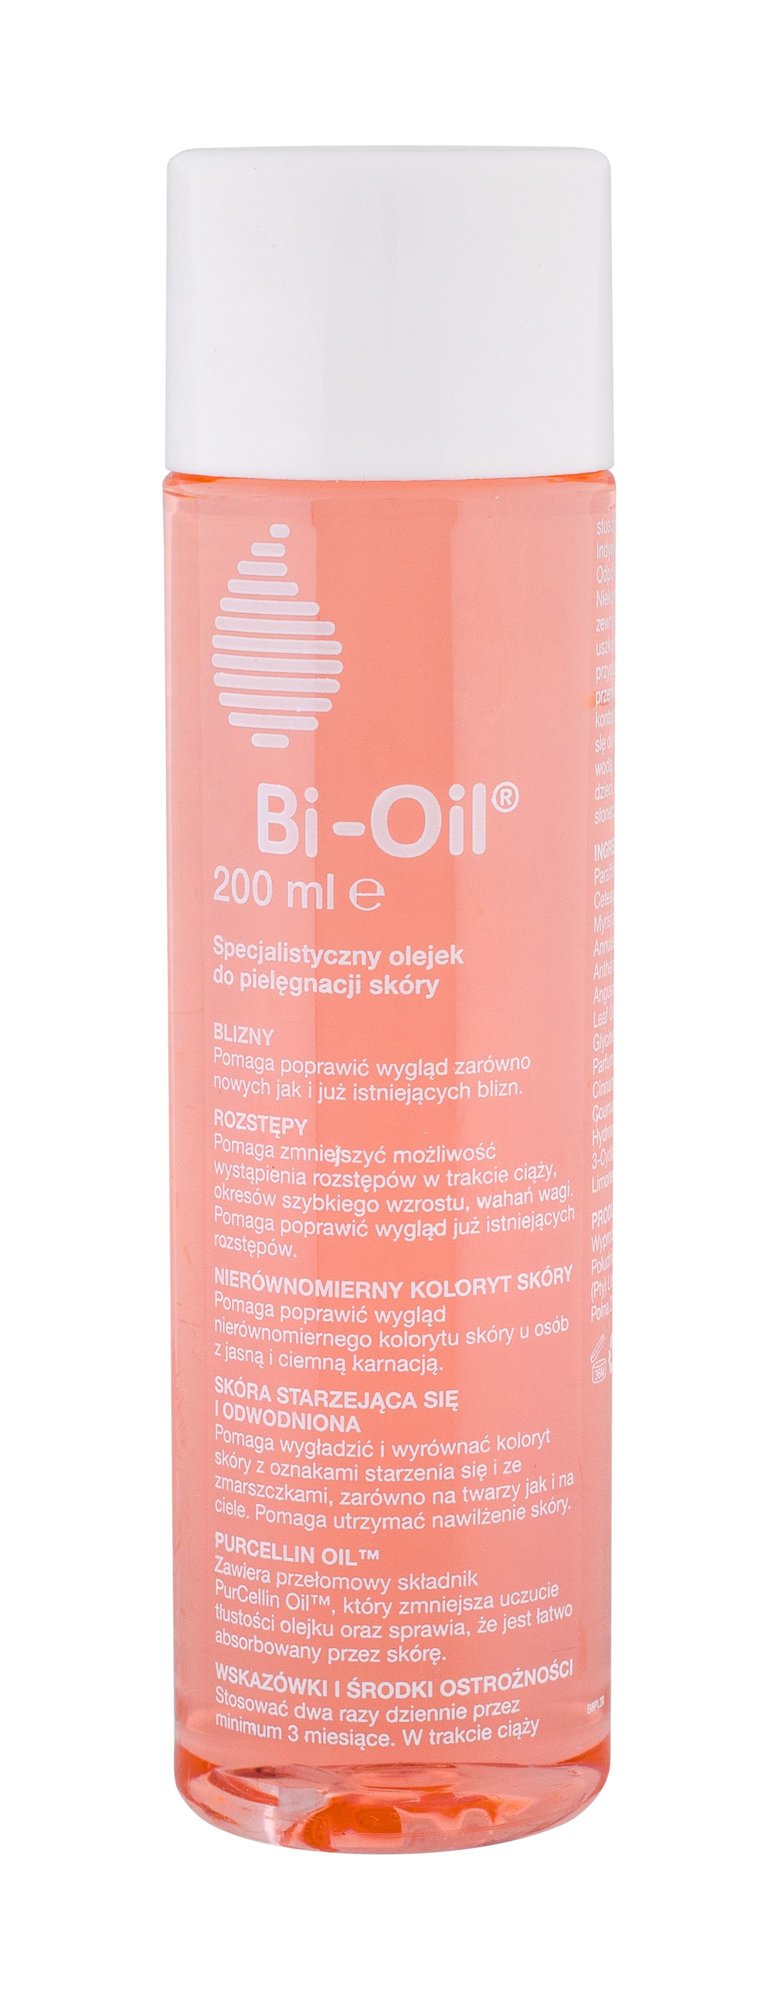 Bi-Oil PurCellin Oil priemonė celiulitui ir strijoms